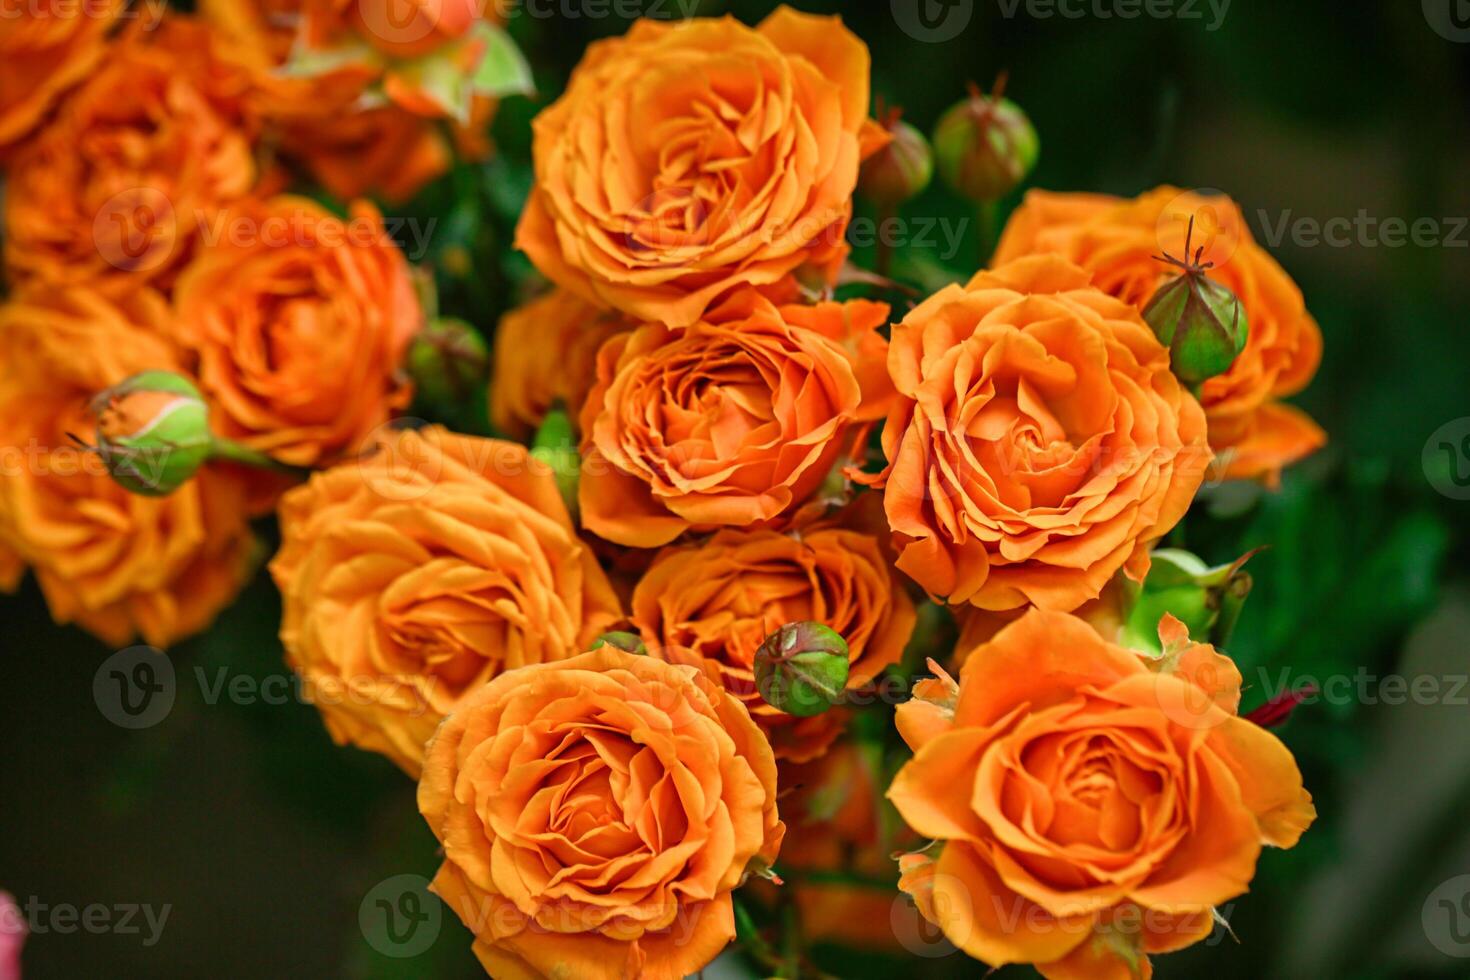 Vibrant Orange Roses in Vase photo